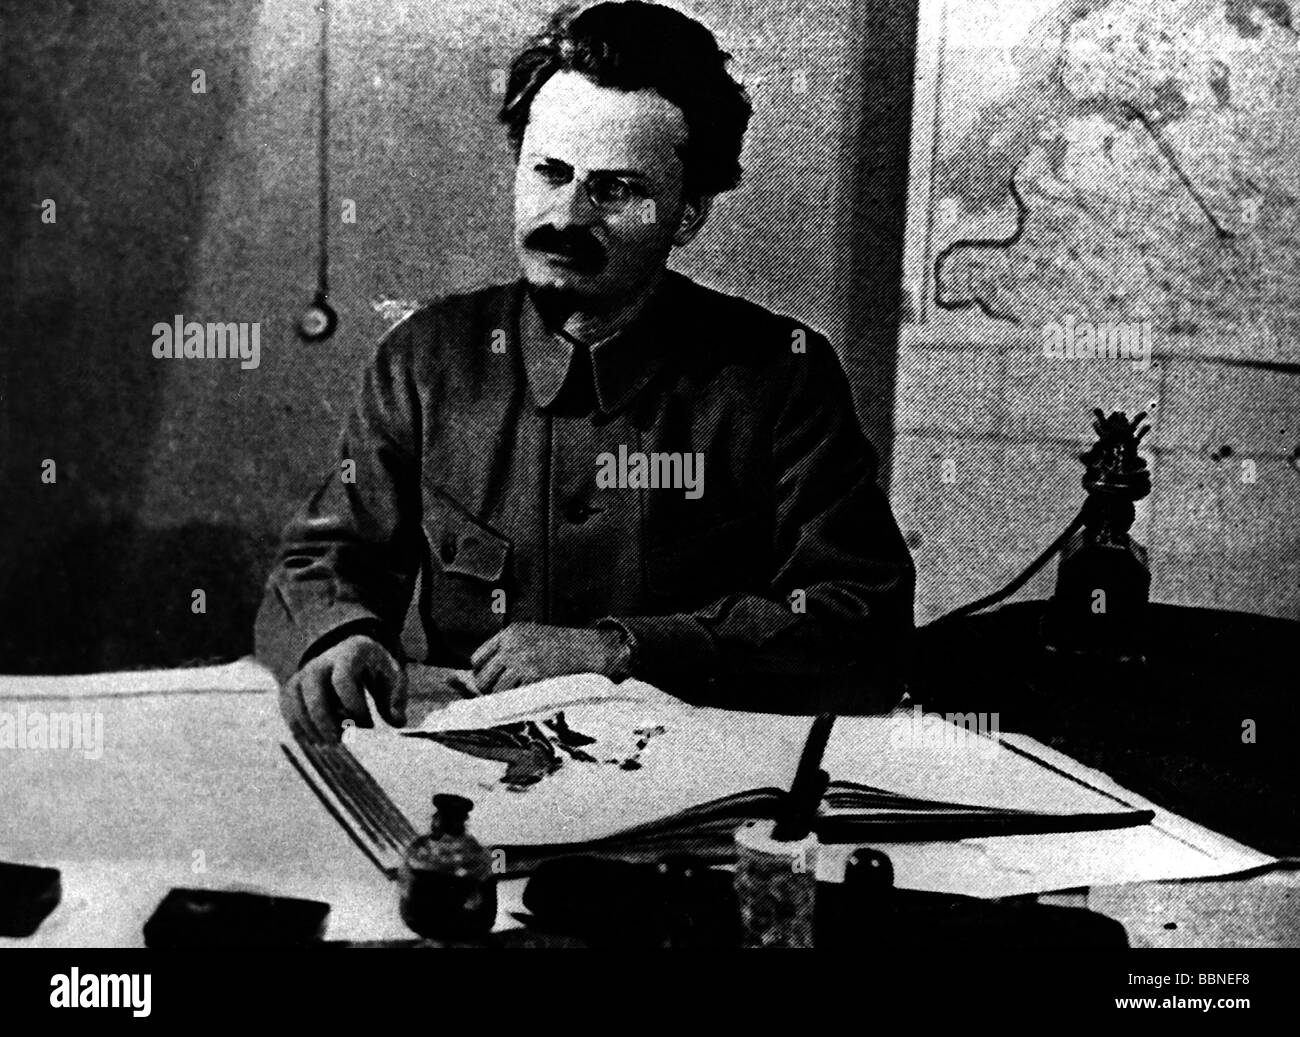 Trotsky, Leon (Lev Davidovich Bronstein), 7.11.1879 - 21.8 1940, politico sovietico, commissario Popolare per l'esercito e la Marina 1918 - 1925, alla sua scrivania, circa 1920, Foto Stock